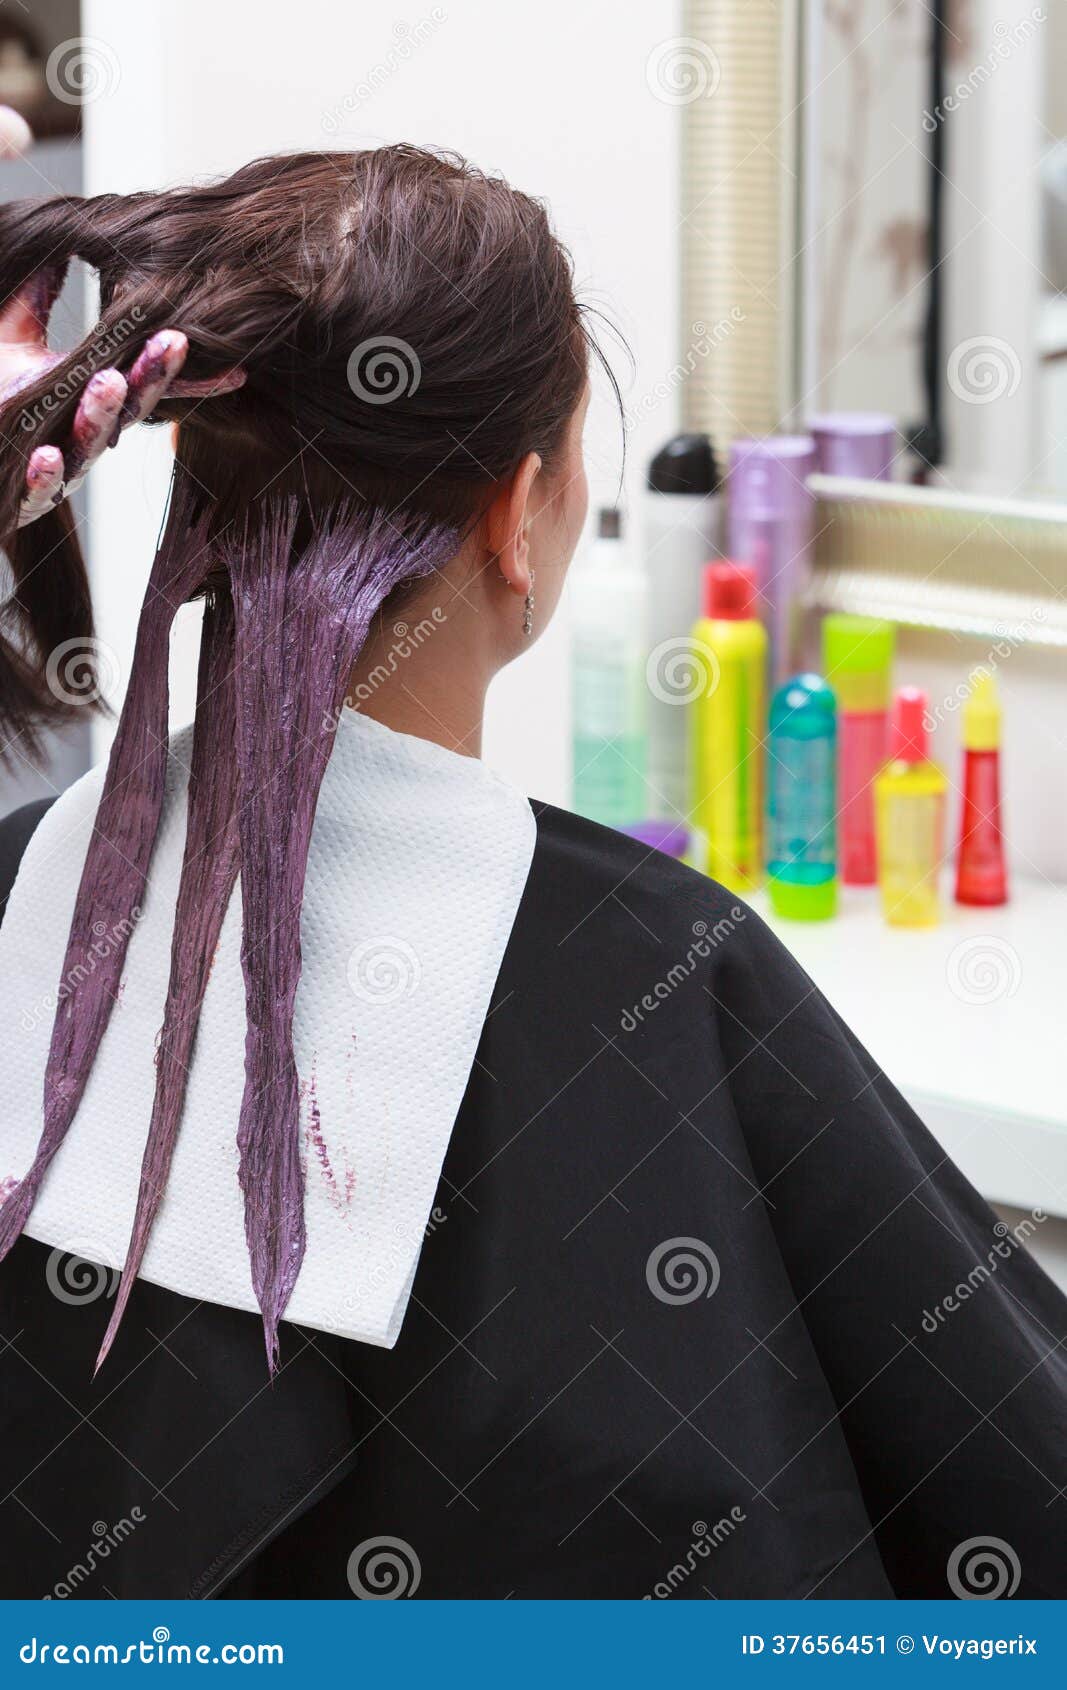 Hairdresser Applying Color Female Customer At Salon, Doing Hair Dye